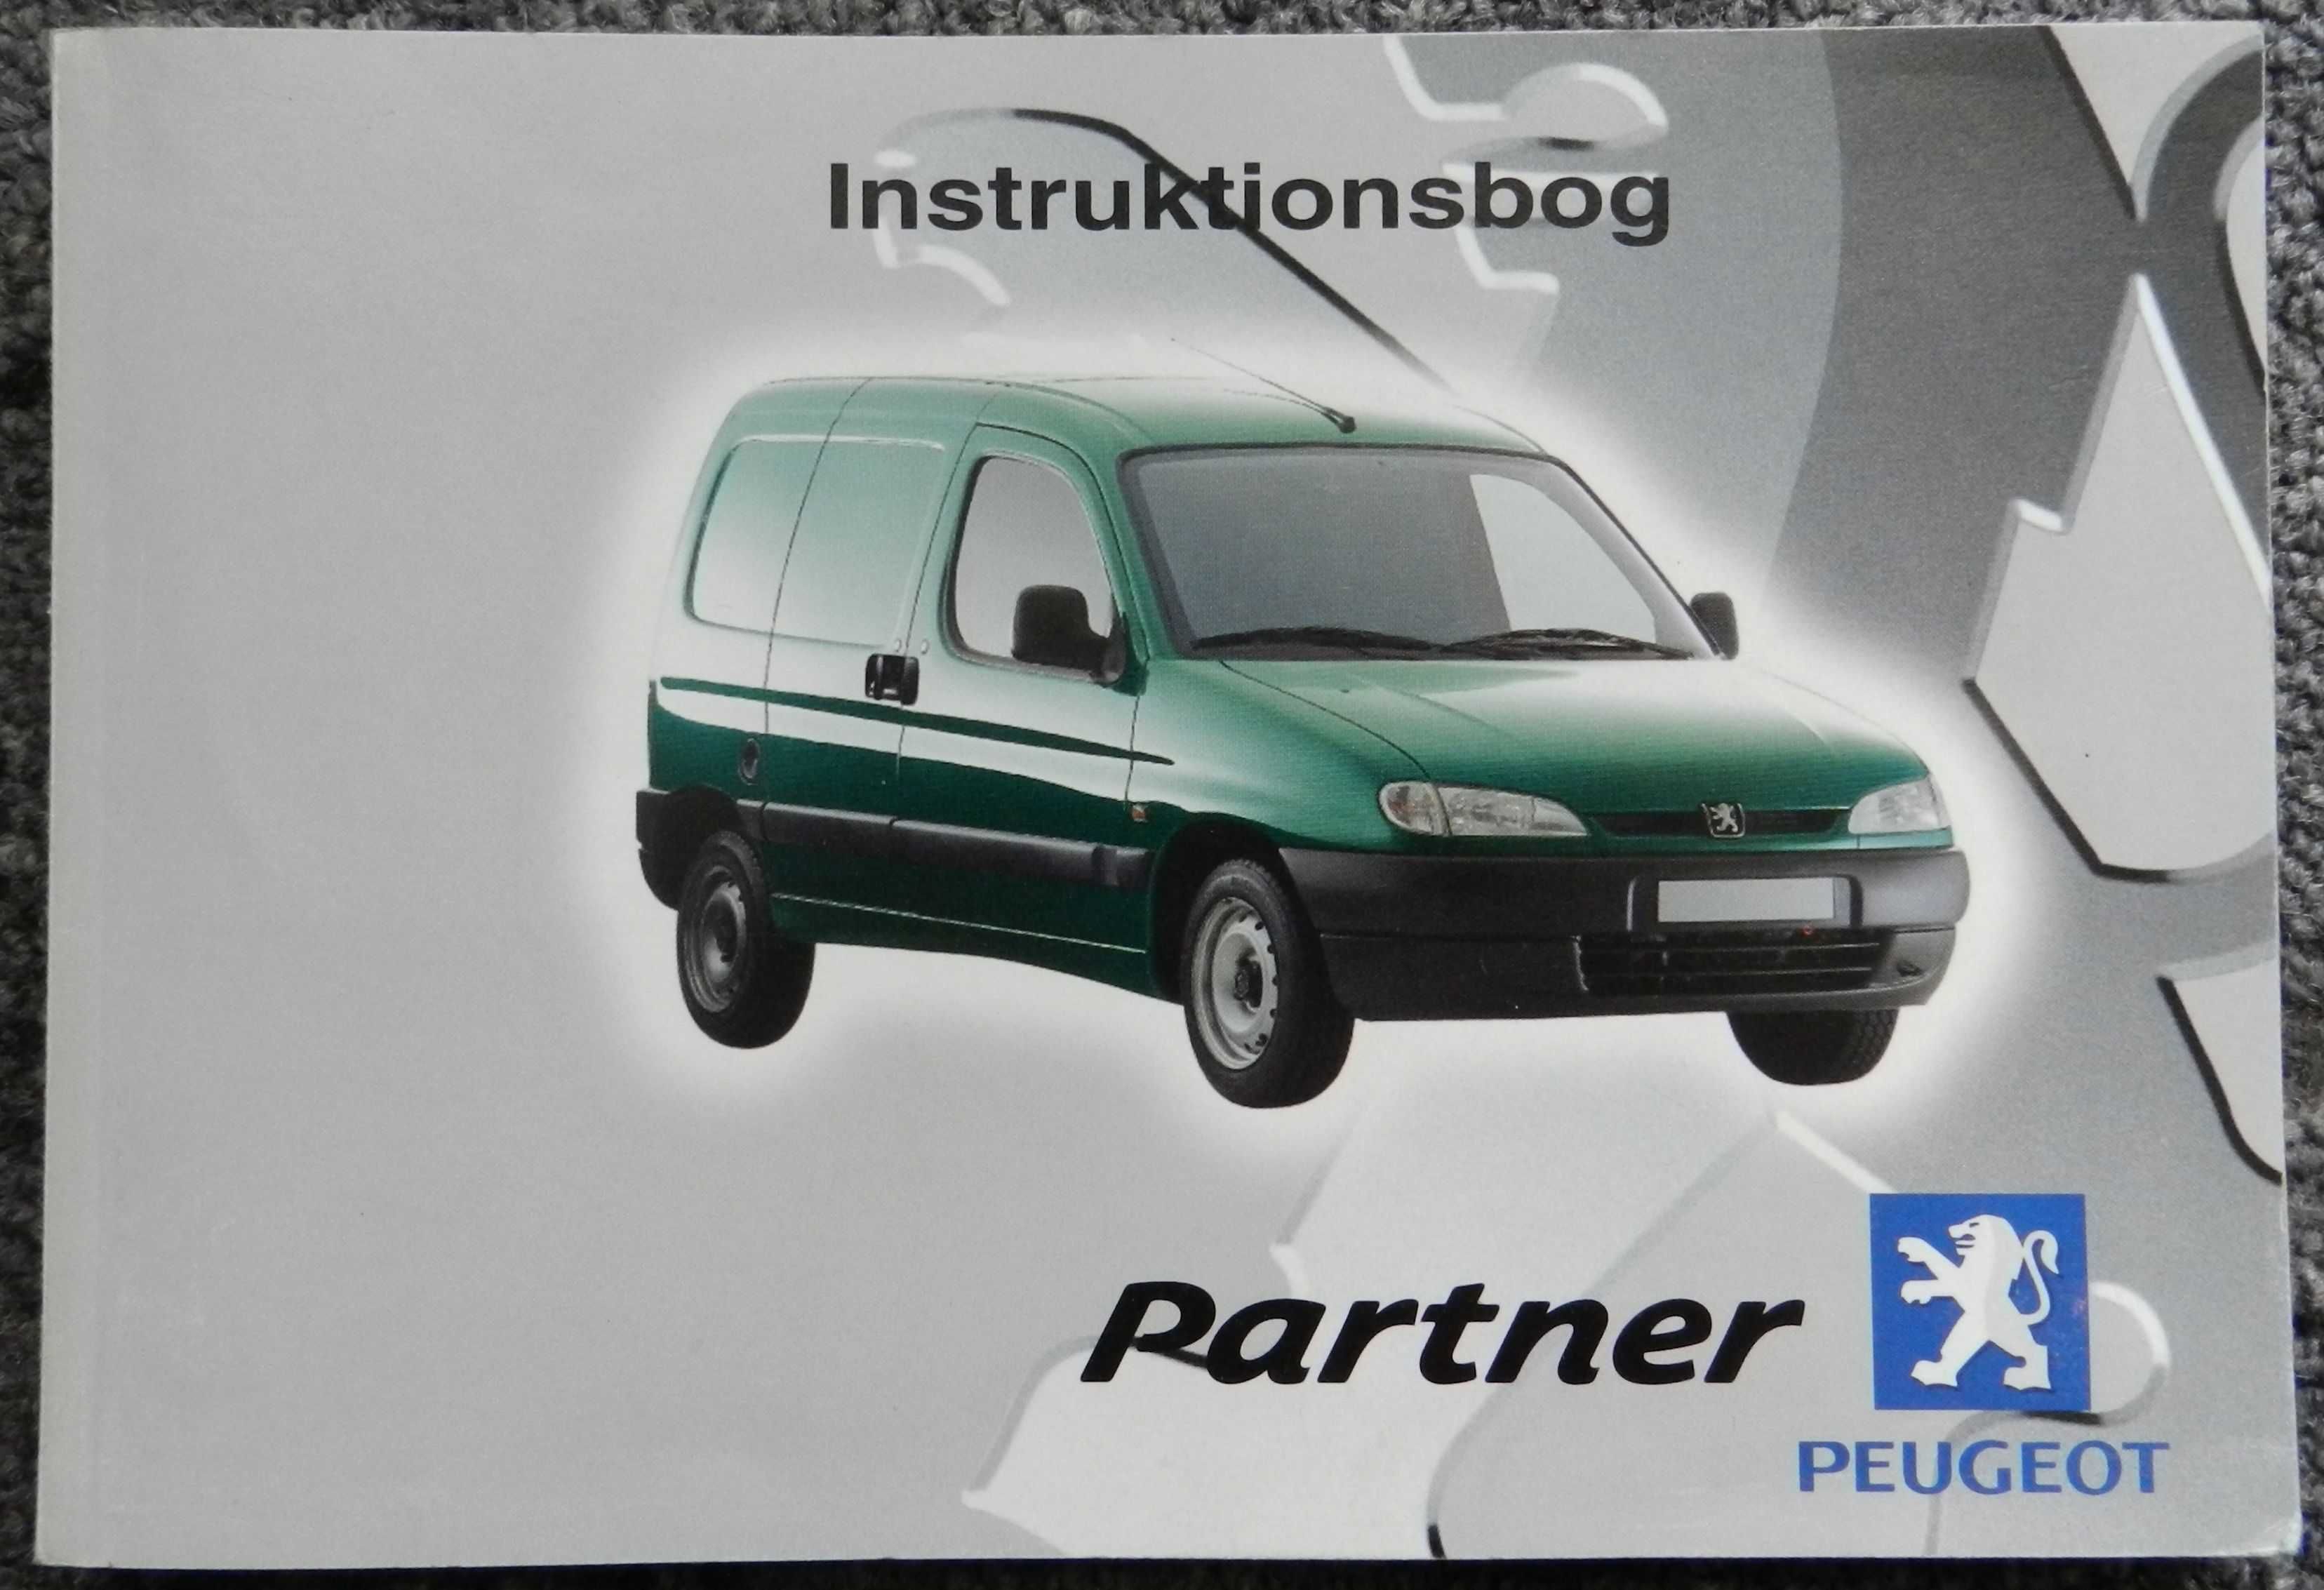 Instrukcja obsługi samochodu Peugeot Partner, książka w języku duńskim